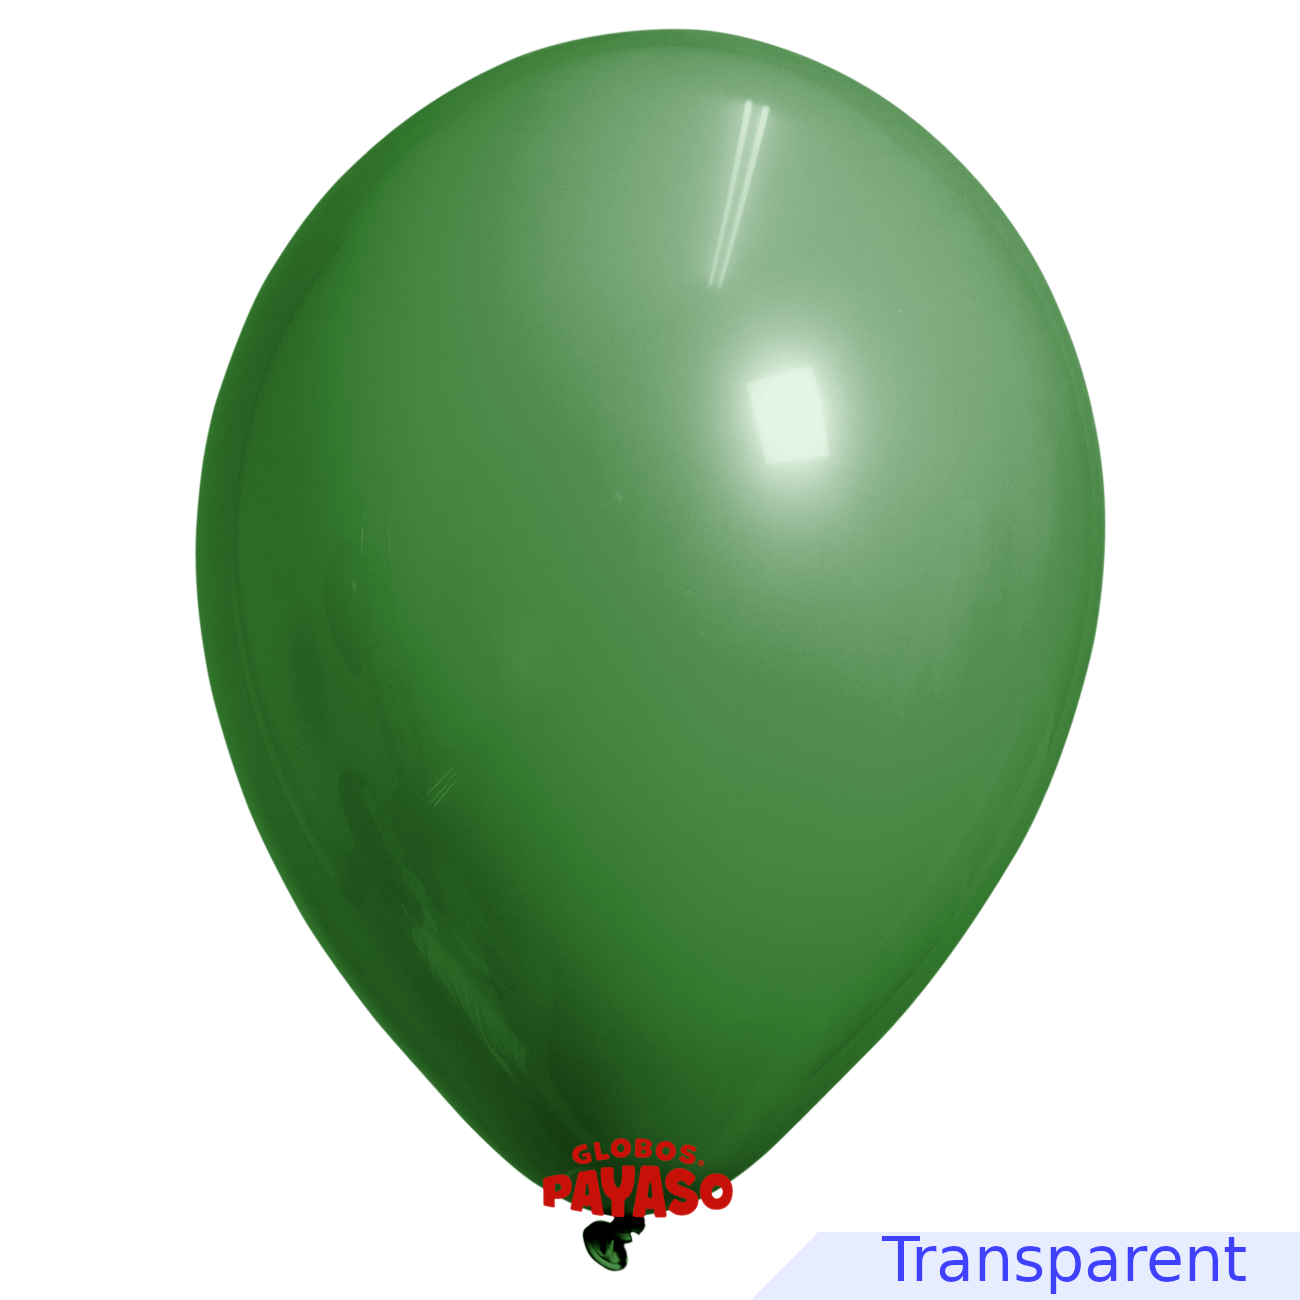 Globos Payaso / Unique 36" Vert Émeraude Translucide Décorateur Ballon